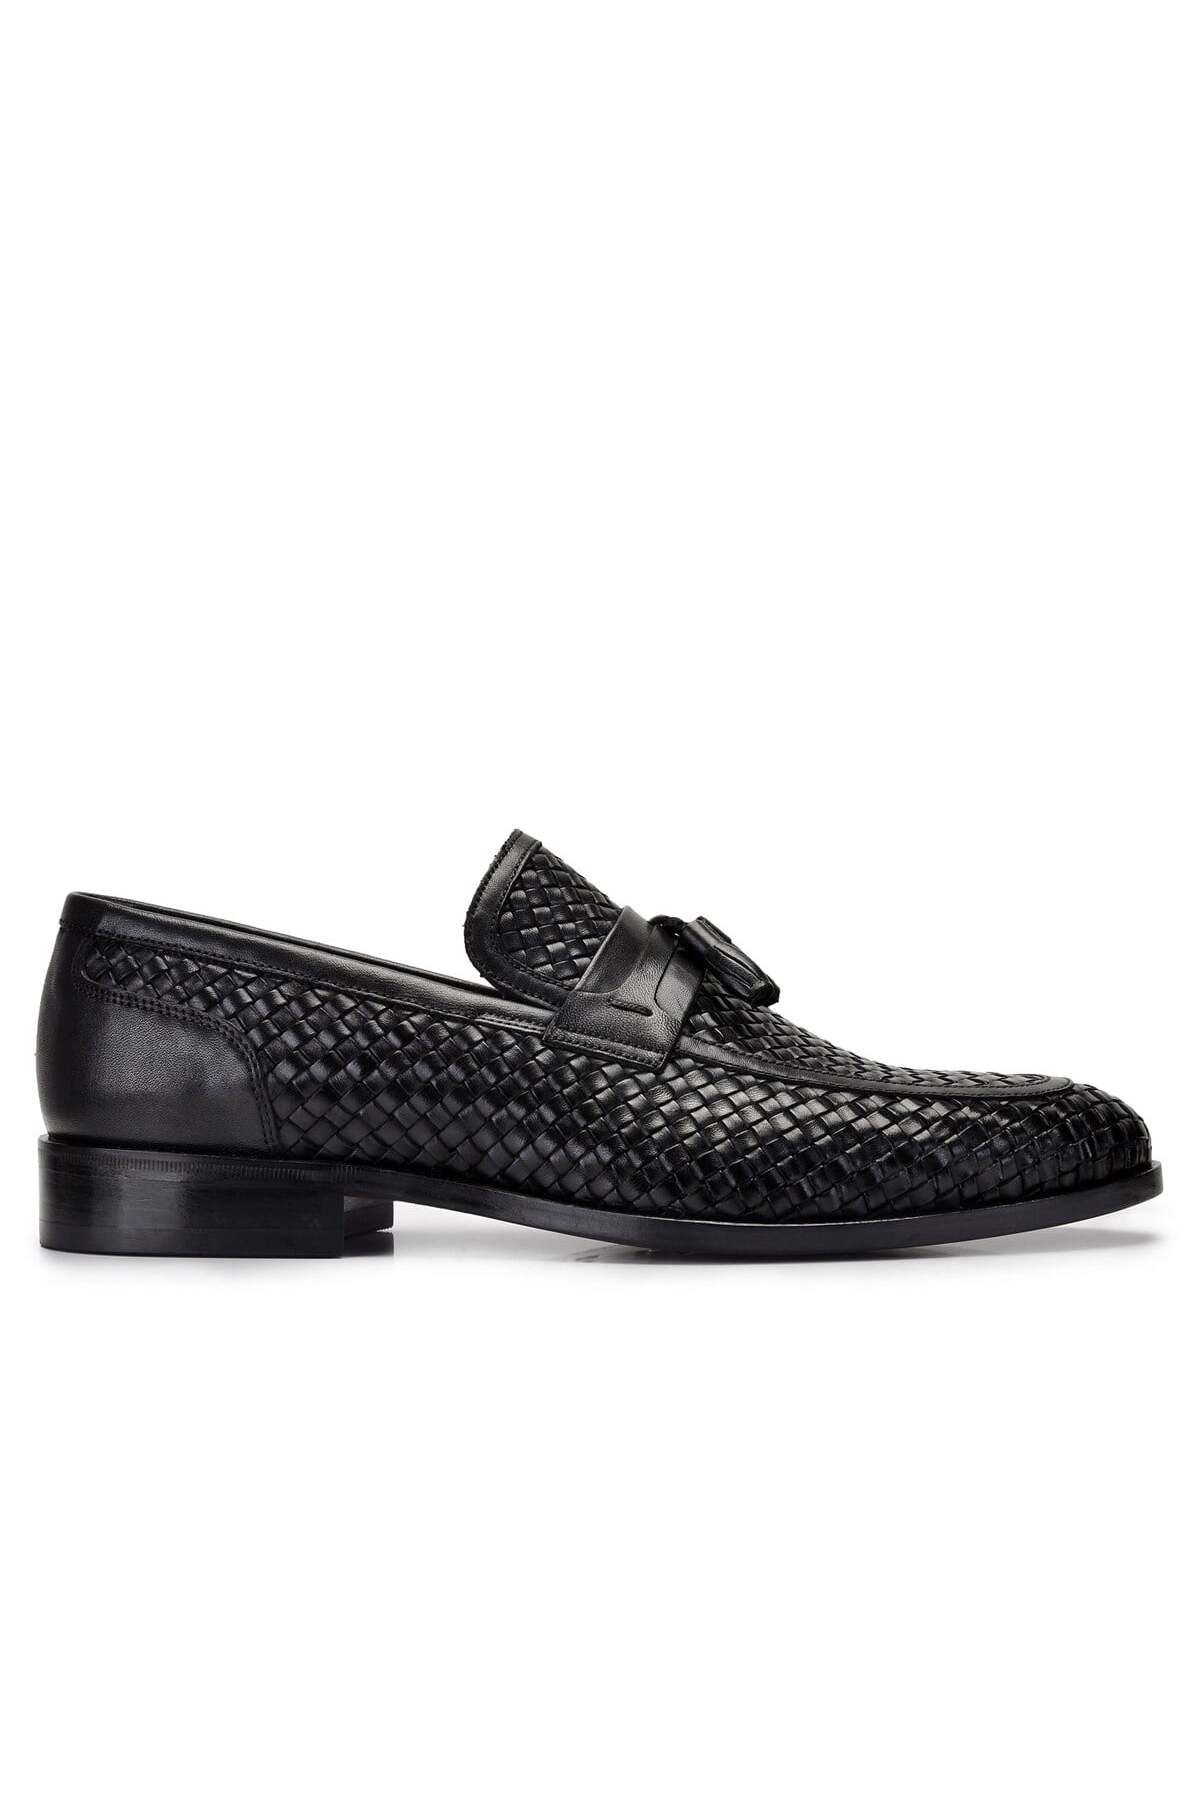 Nevzat Onay Siyah Klasik Loafer Kösele Erkek Ayakkabı -8909-